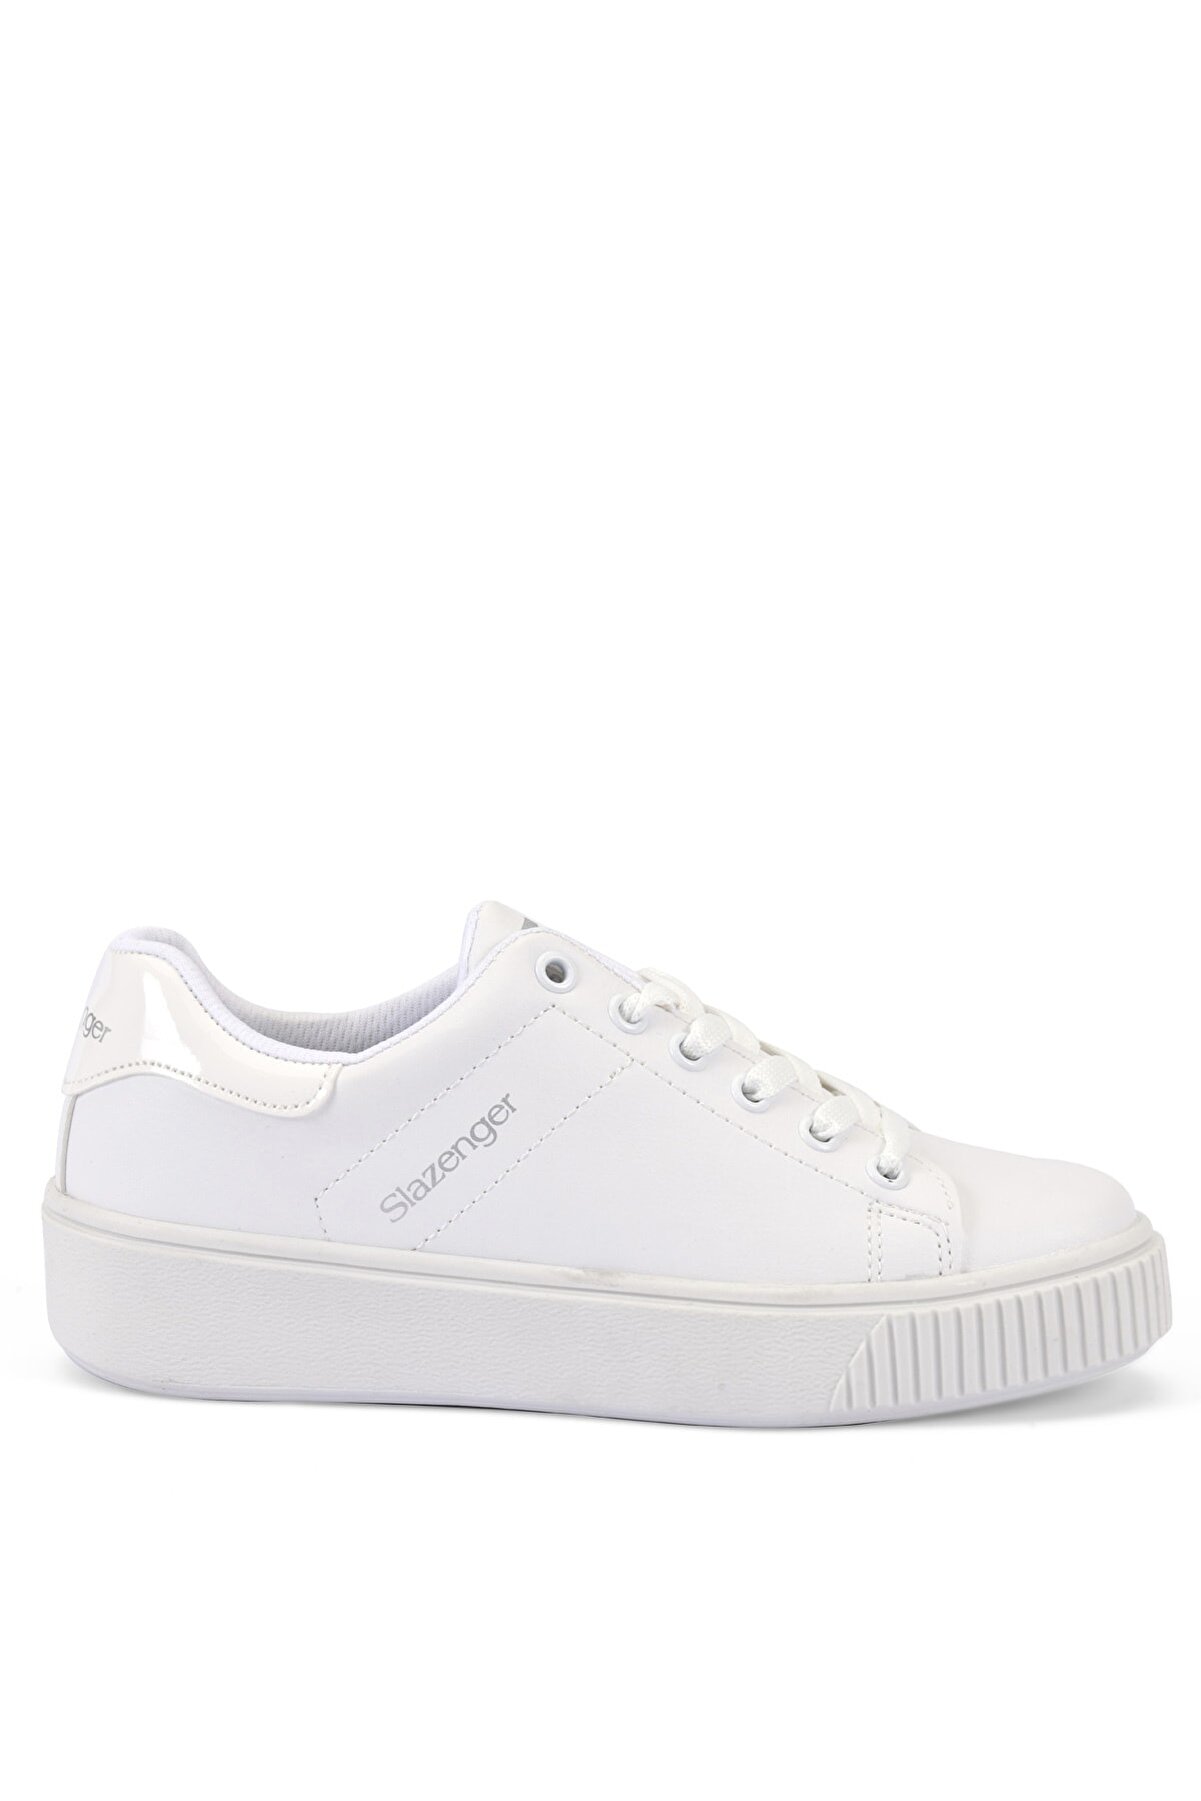 Slazenger Gala I Sneaker Kadın Ayakkabı Beyaz